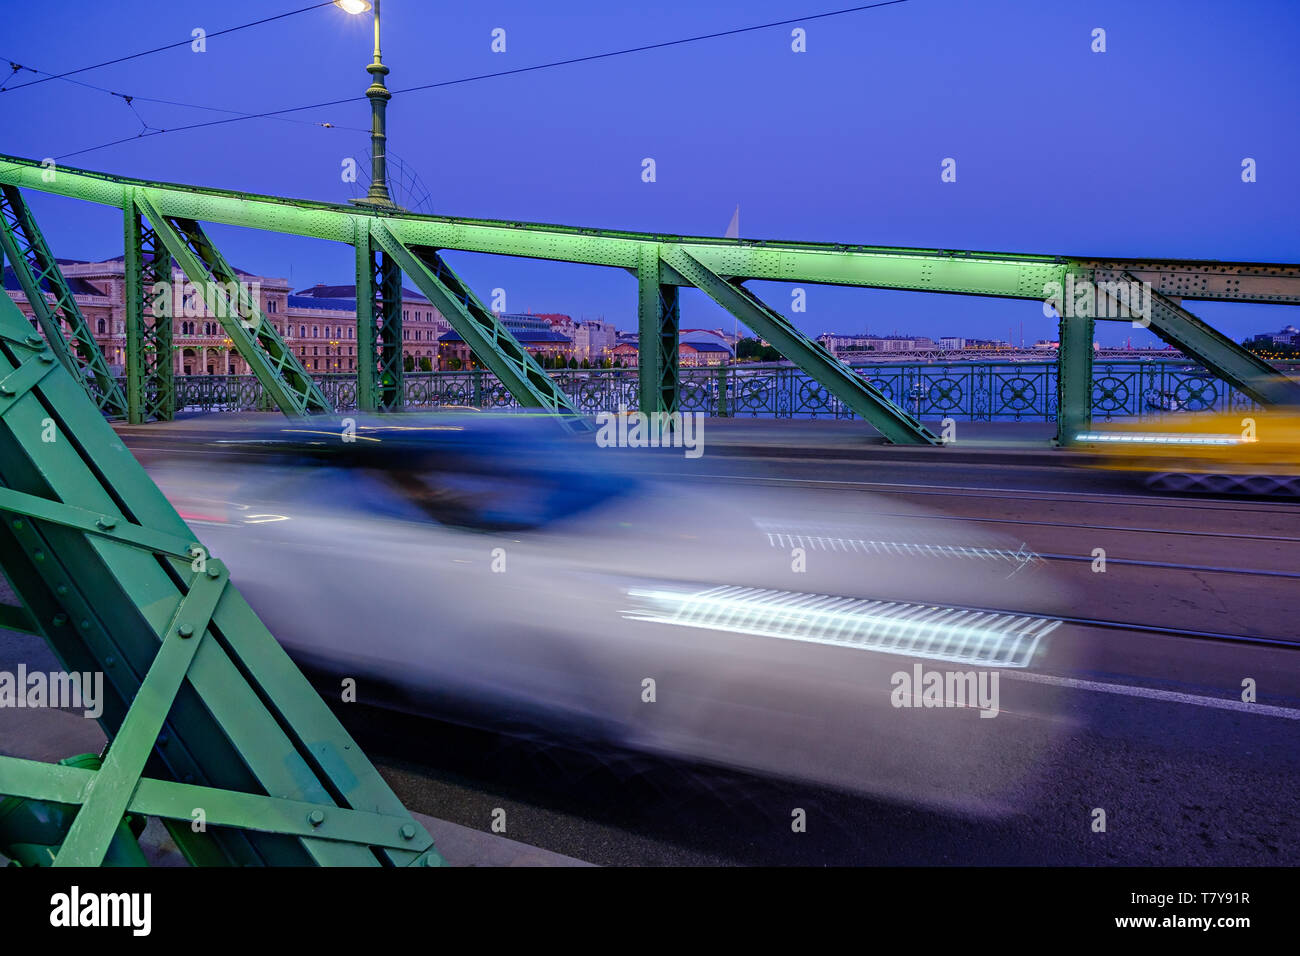 Danubia Fluss, Budapest, Ungarn: street scene auf der Freiheitsbrücke zabadság hid', Jugendstil, Blaue Stunde Langzeitbelichtung. Blick Richtung Pest. Stockfoto